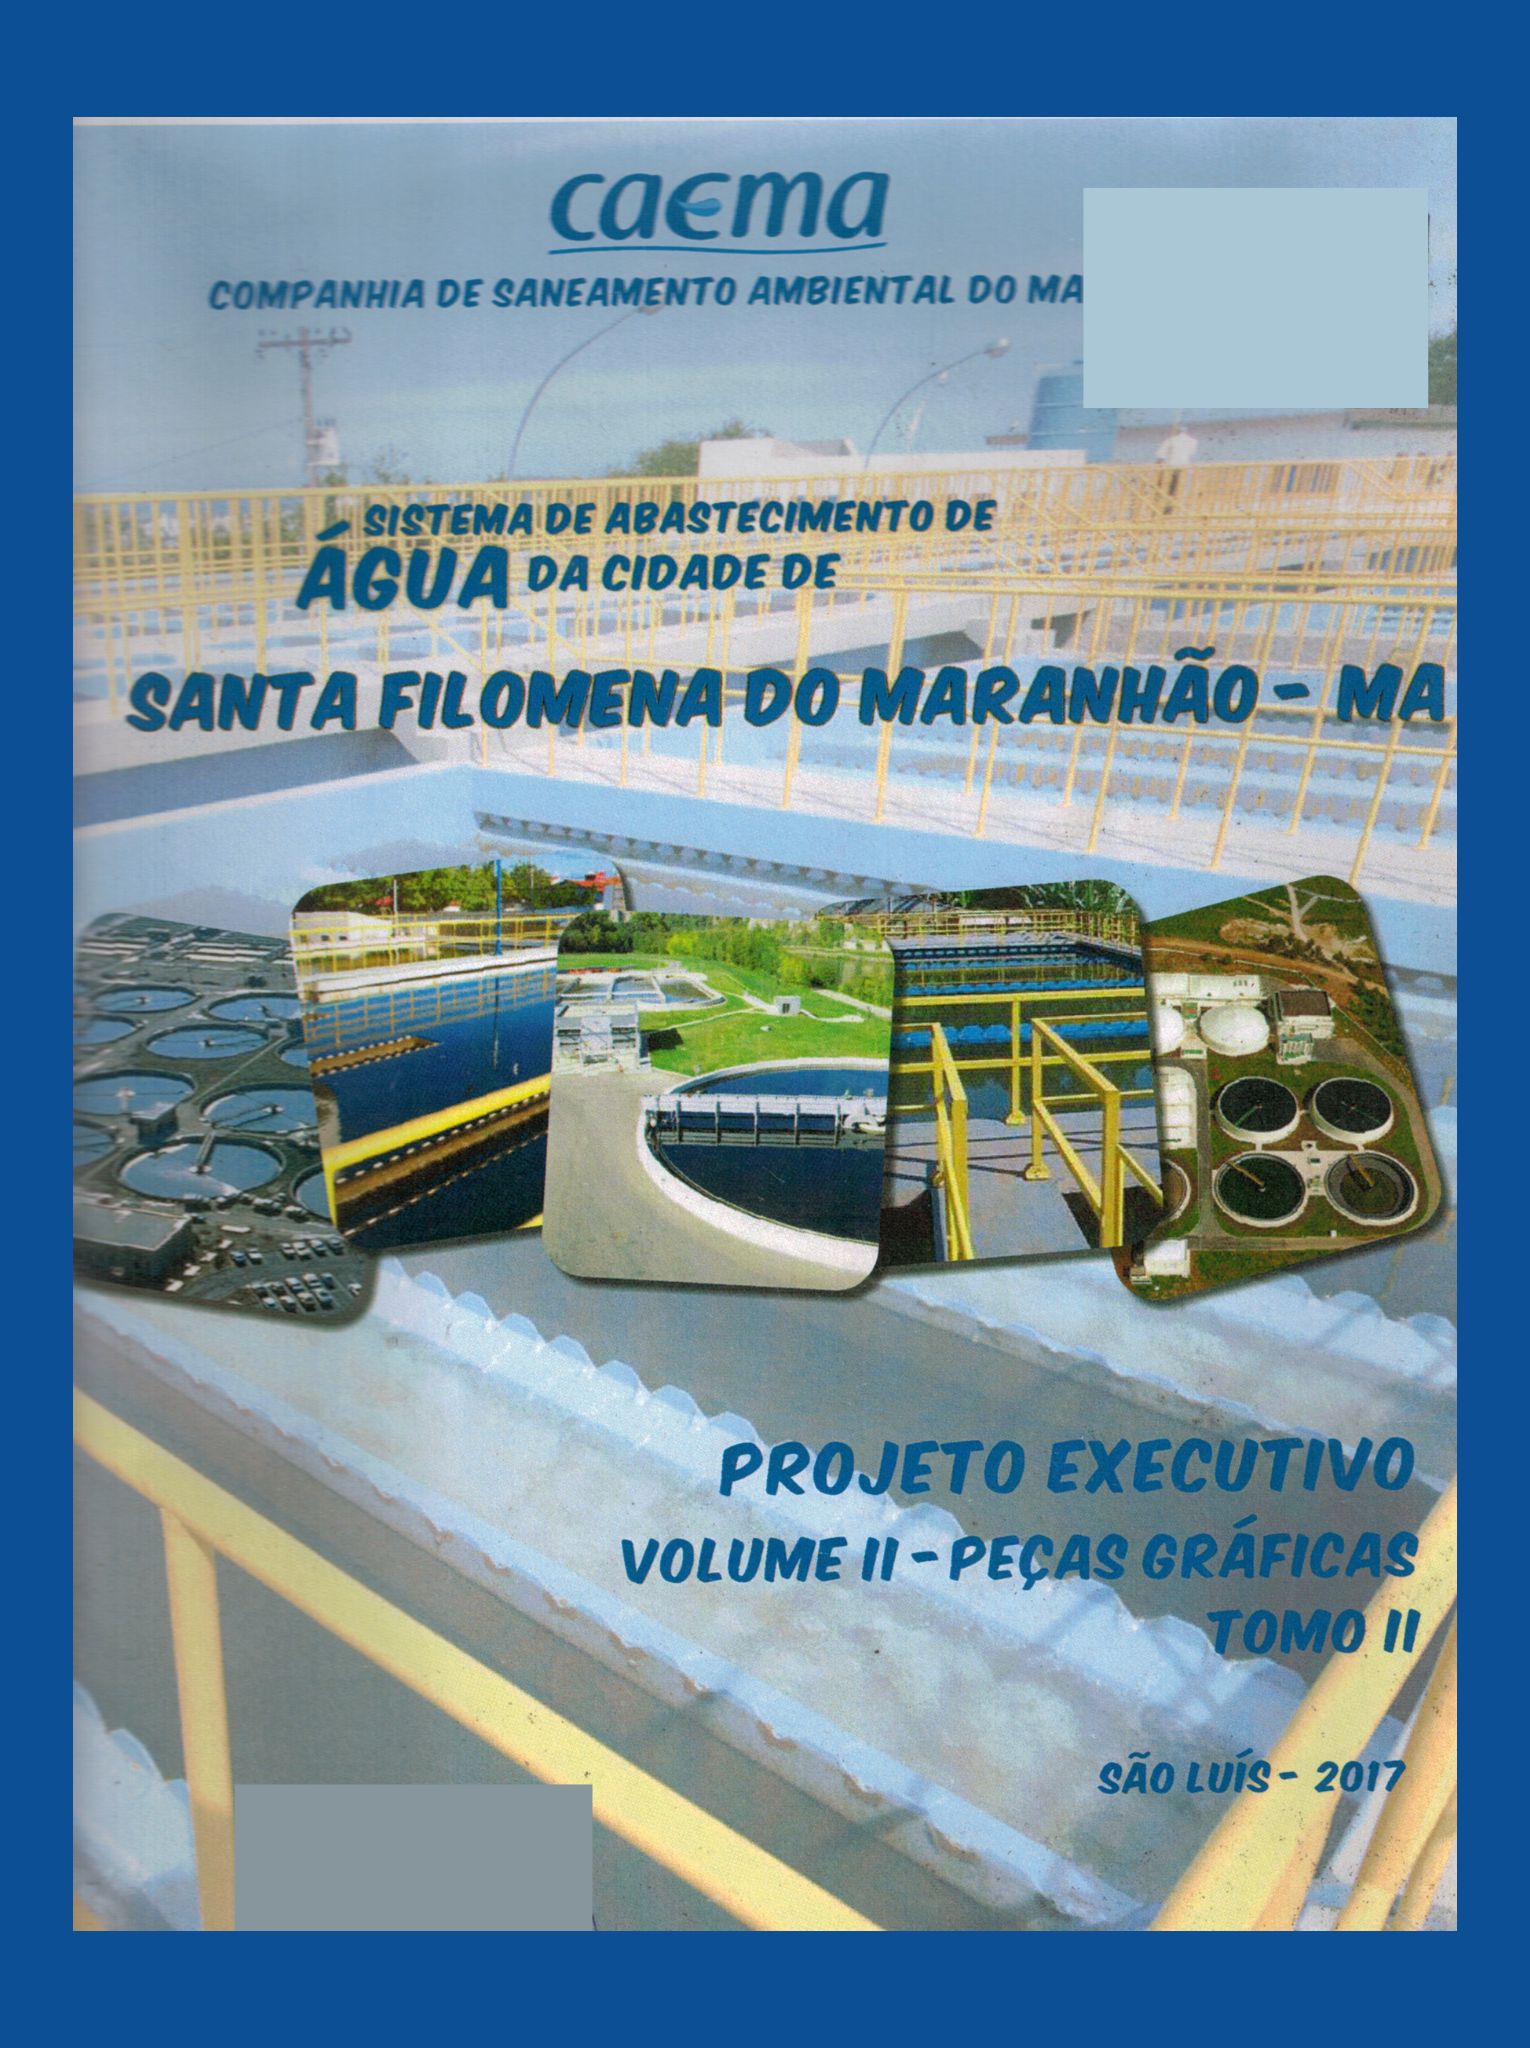 Imagem da capa do Projeto técnico com informações de titulo e autoria.